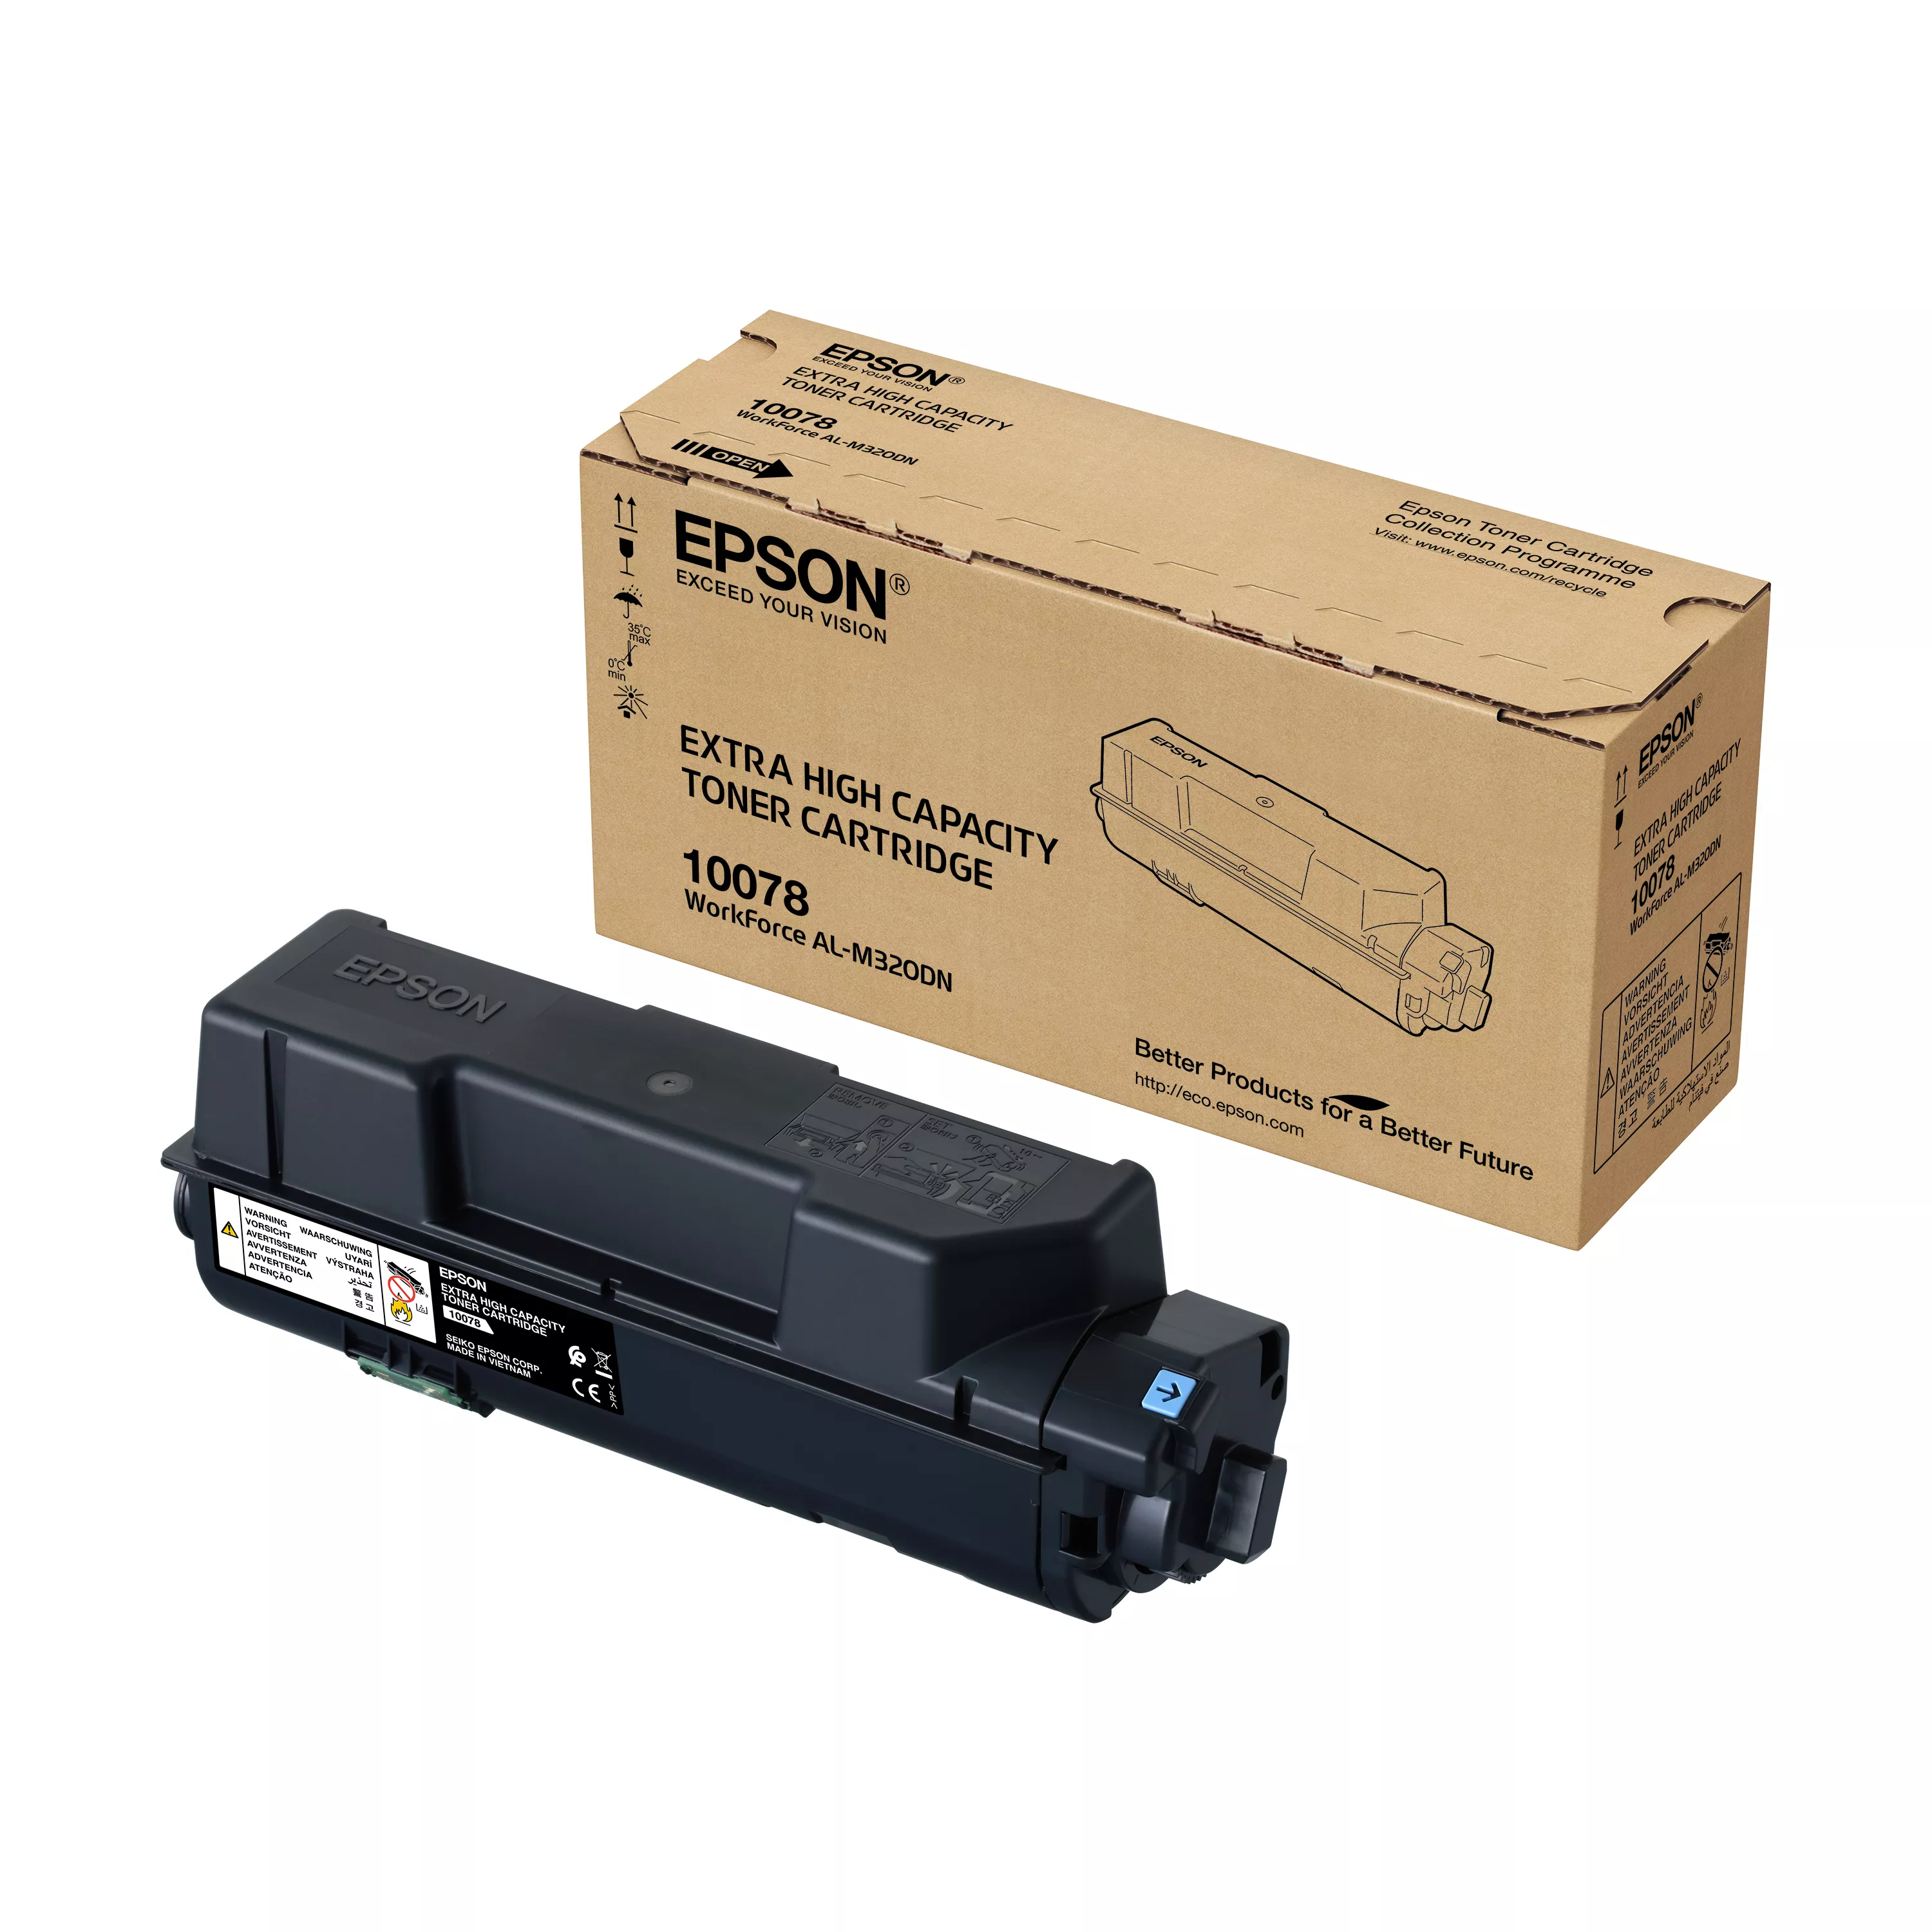 Vente EPSON High Capacity Toner Cartridge Black au meilleur prix